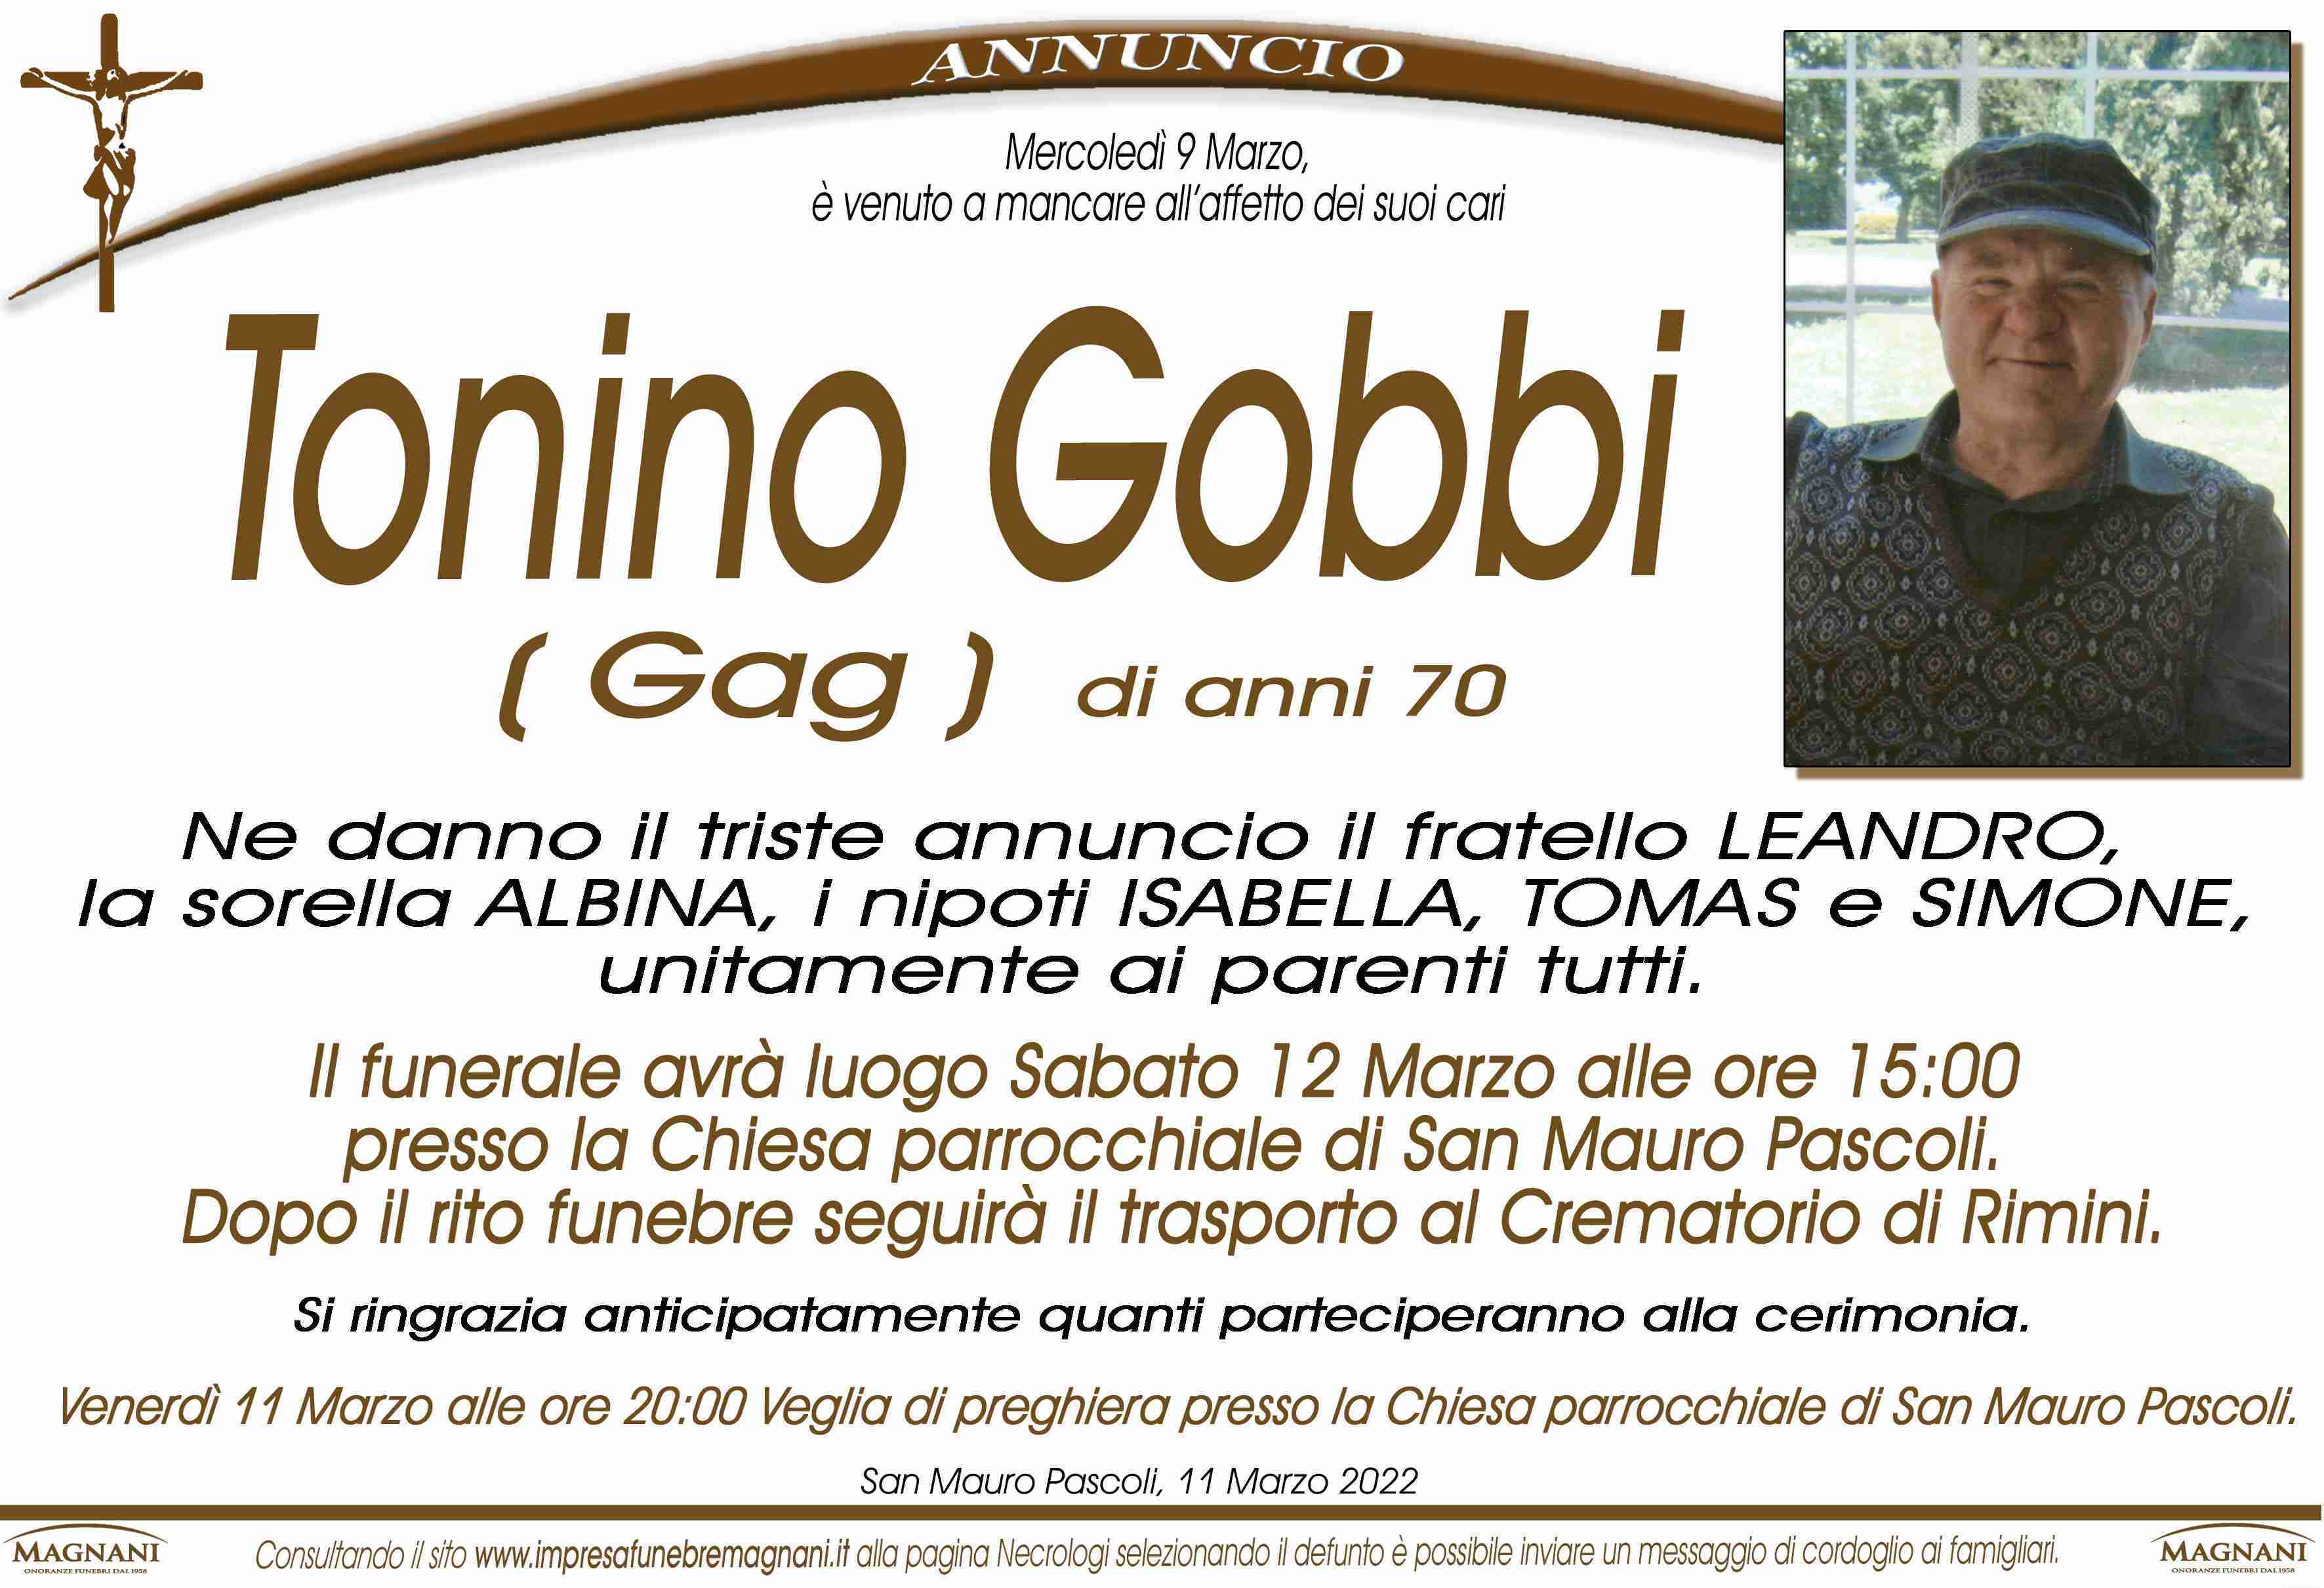 Tonino Gobbi